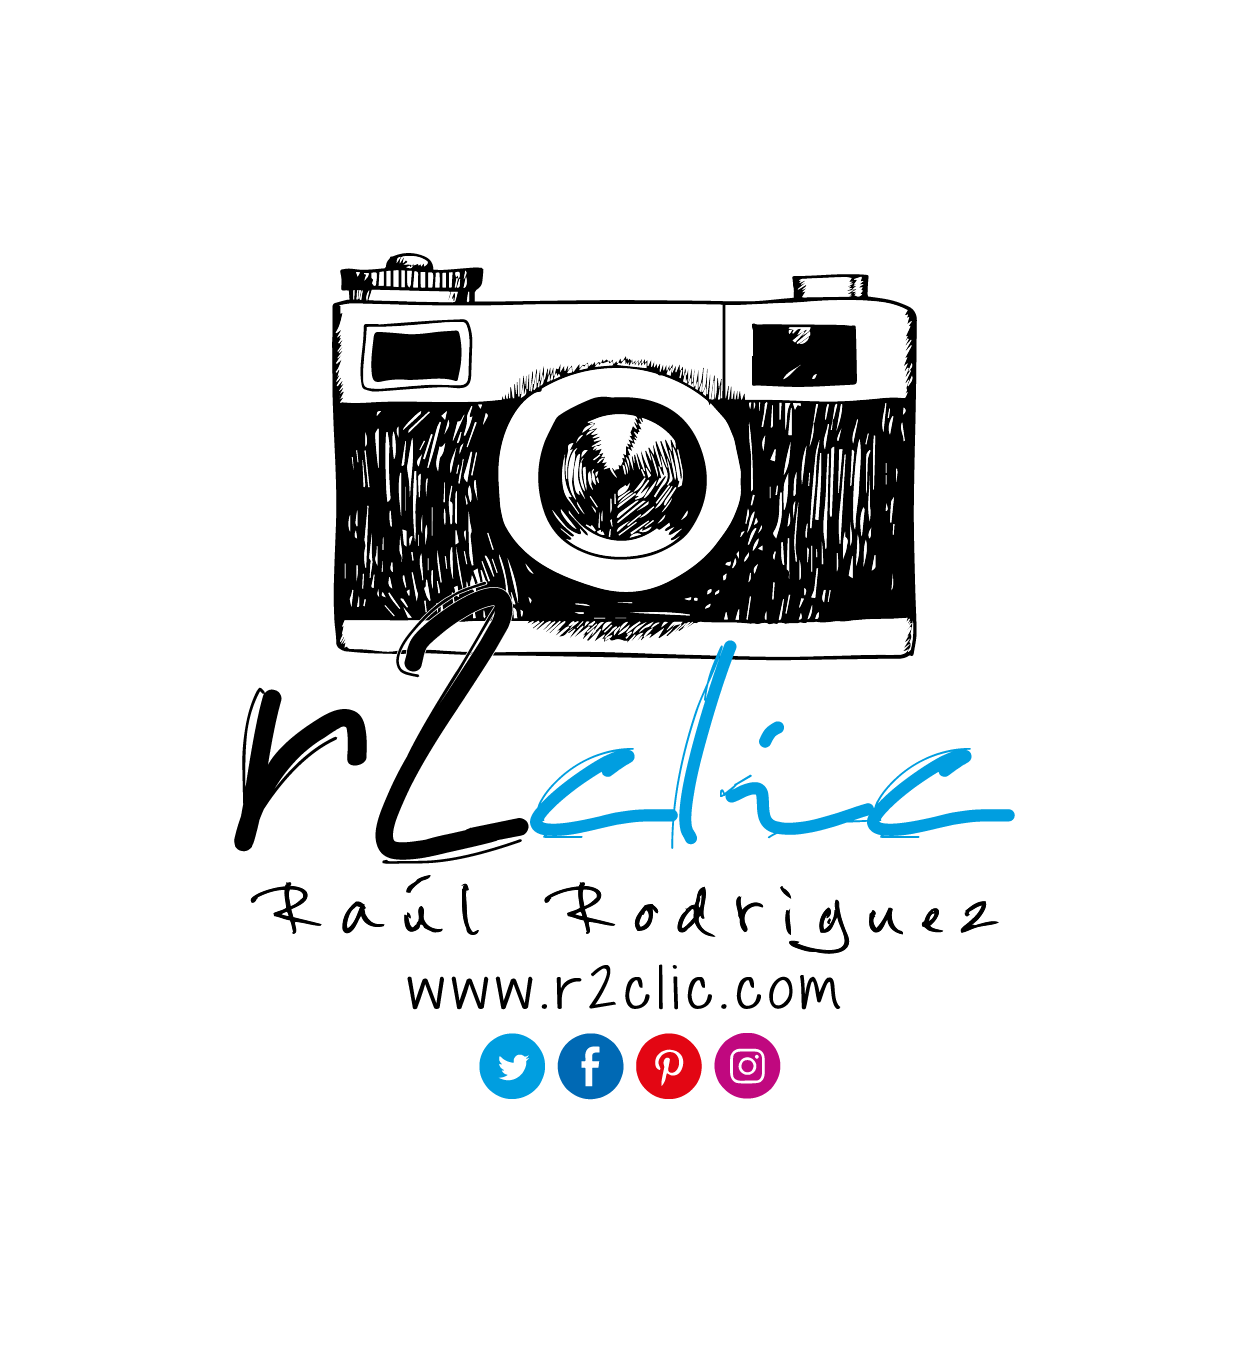 logo-r2clic.com-fotografia-social